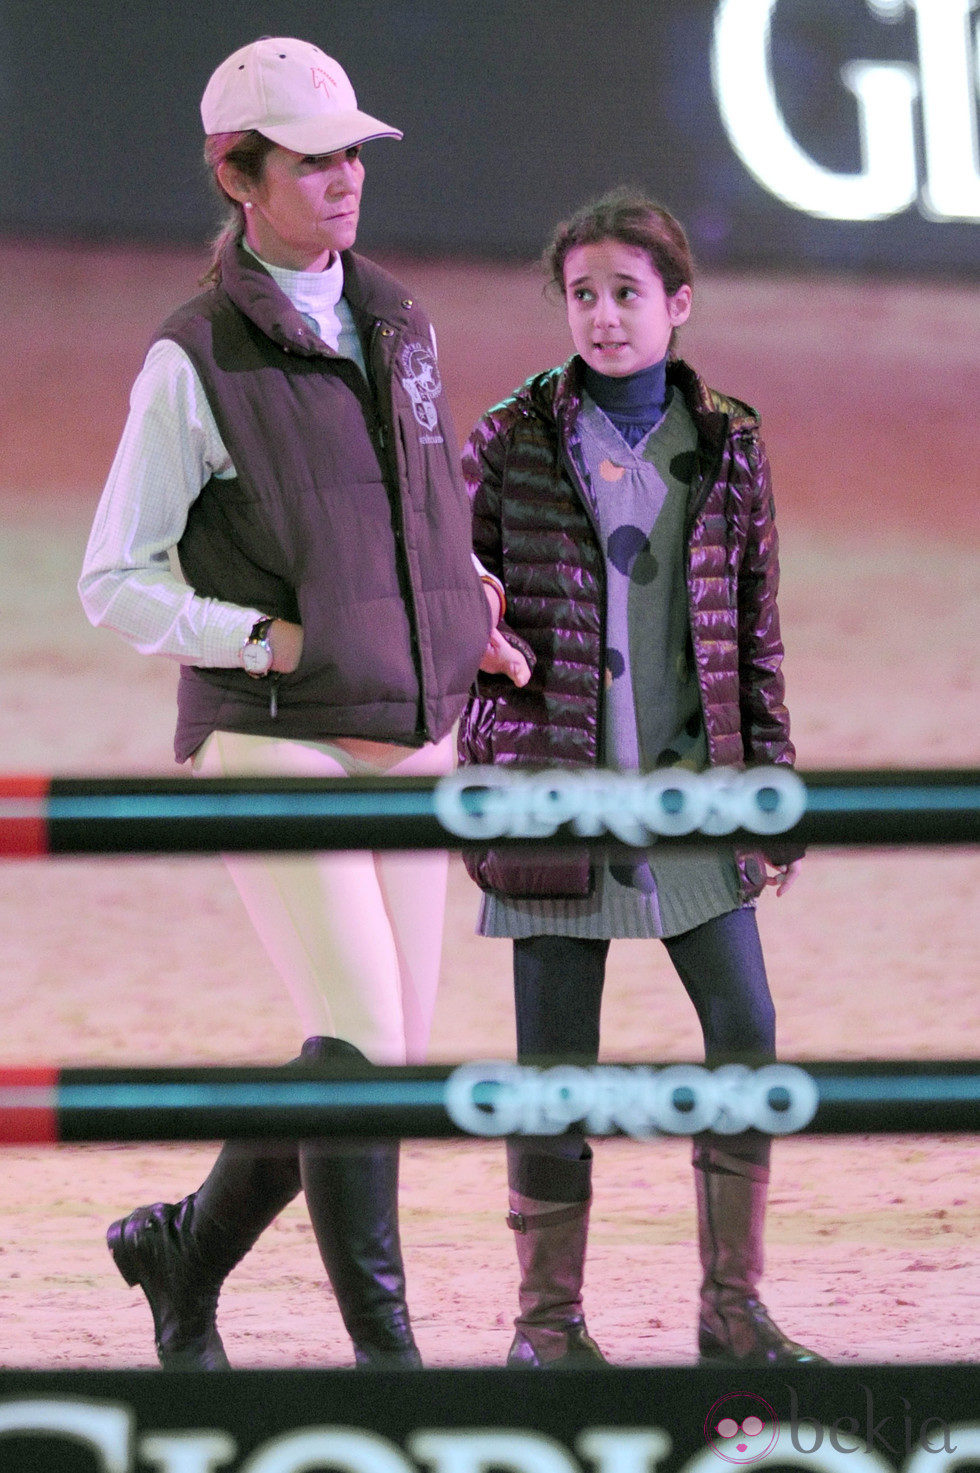 La Infanta Elena y Victoria Federica en la Madrid Horse Week 2012